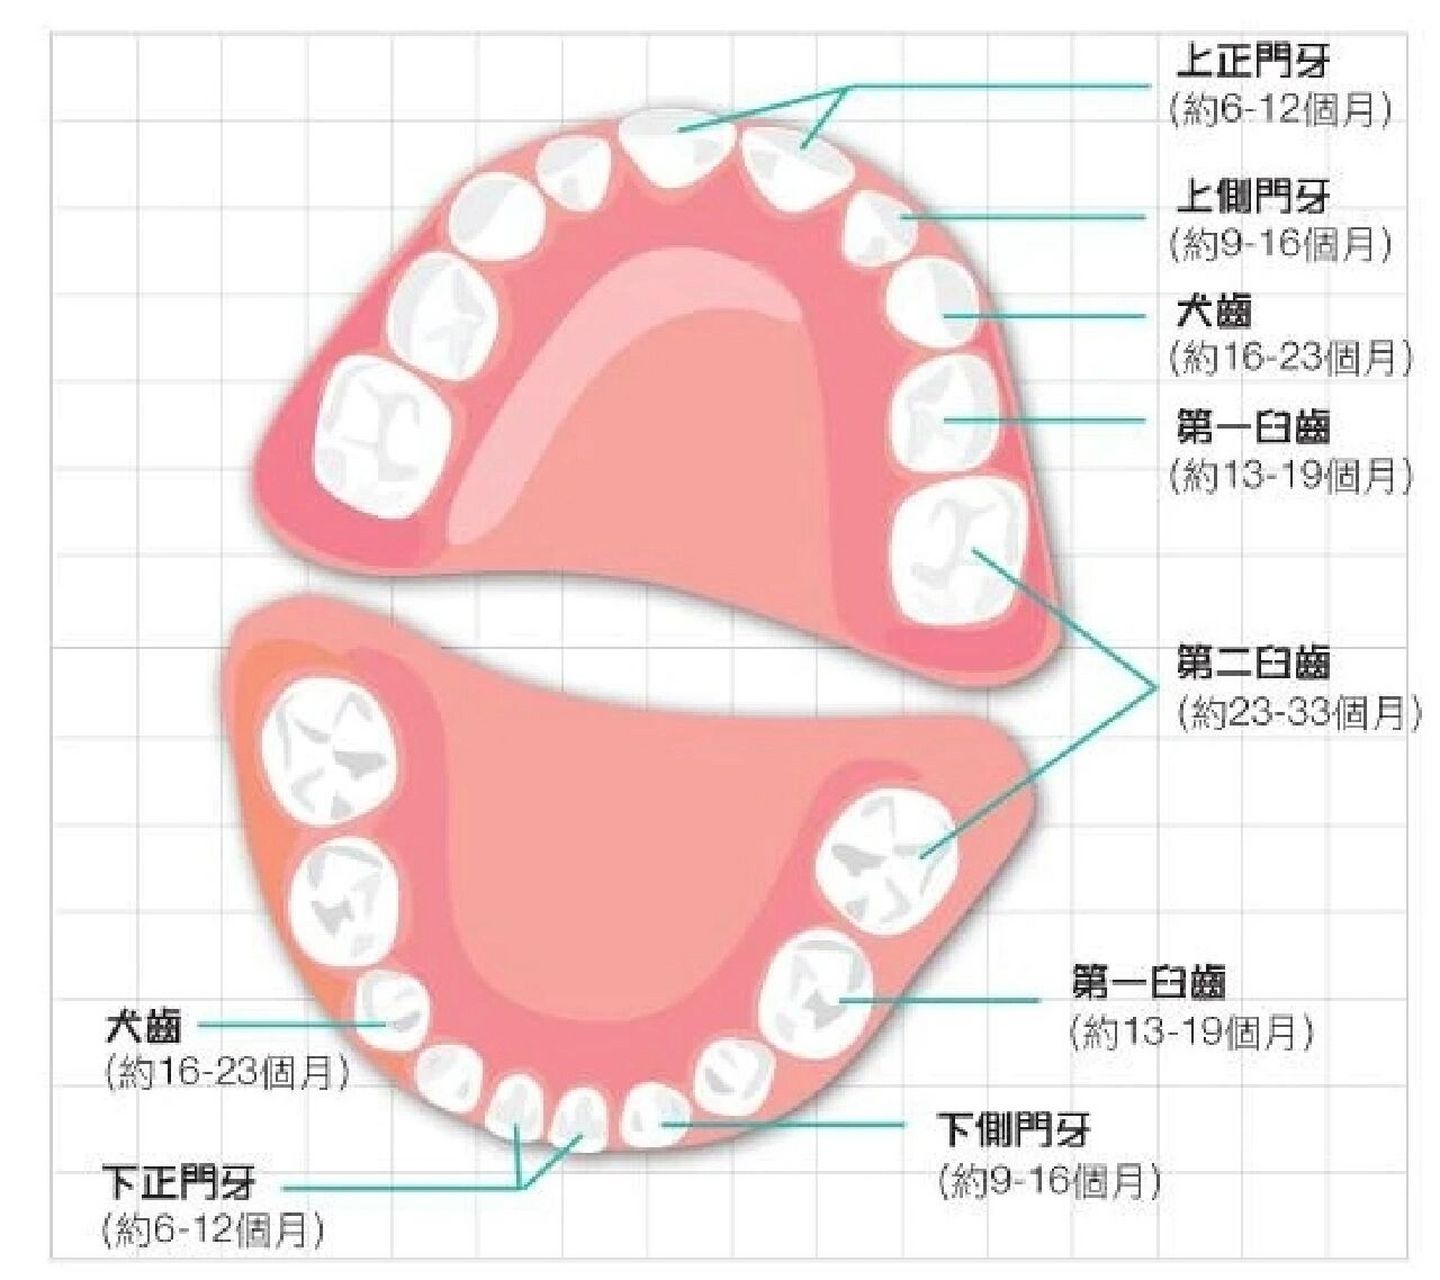 乳牙也就是从出生到儿童时期的牙齿,这些牙齿会脱落,总共有20颗